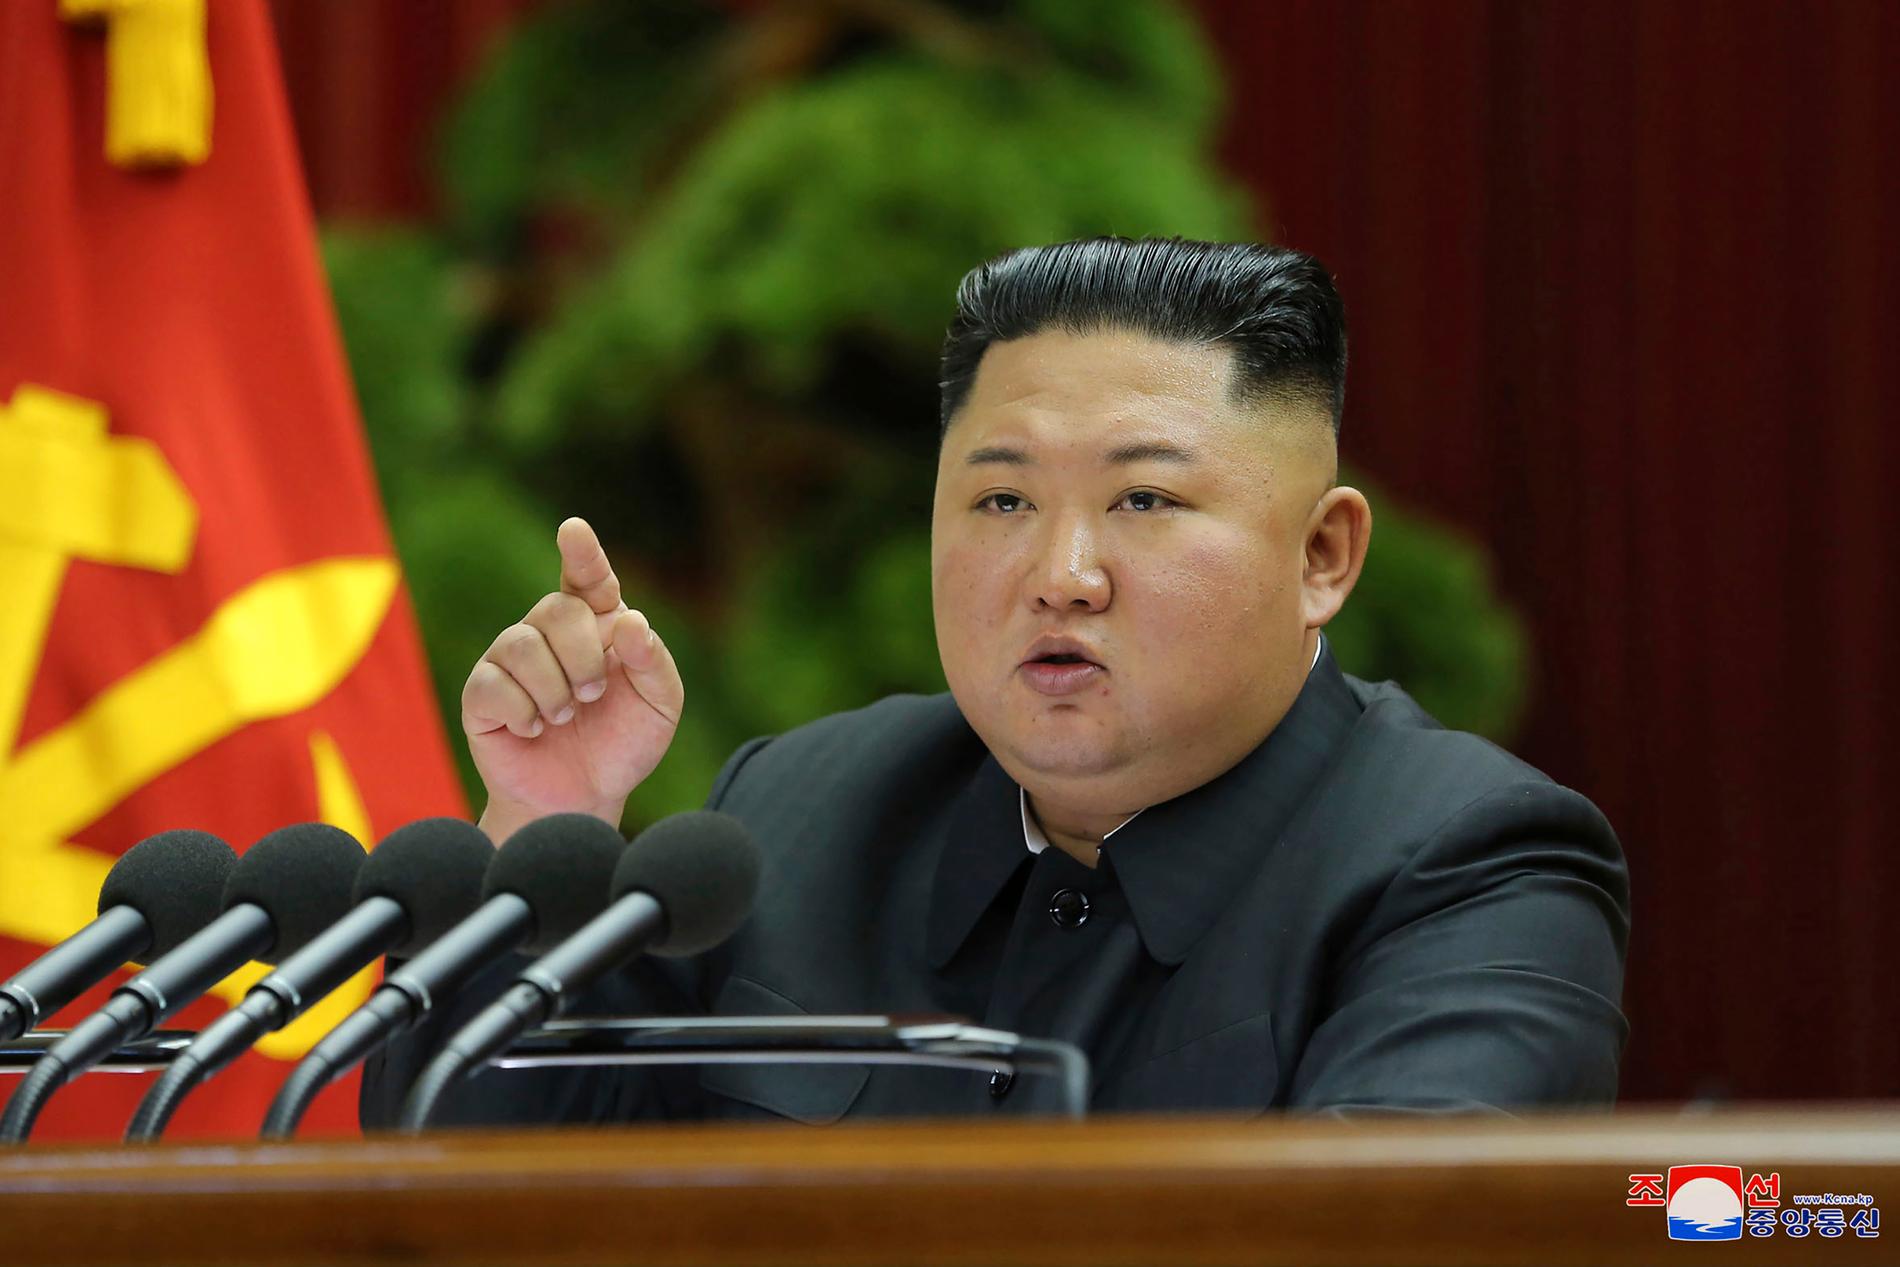 Nordkoreas ledare Kim Jong-Un i december 2019. Bilden kommer från den statliga nyhetsbyrån KCNA. Arkivbild.